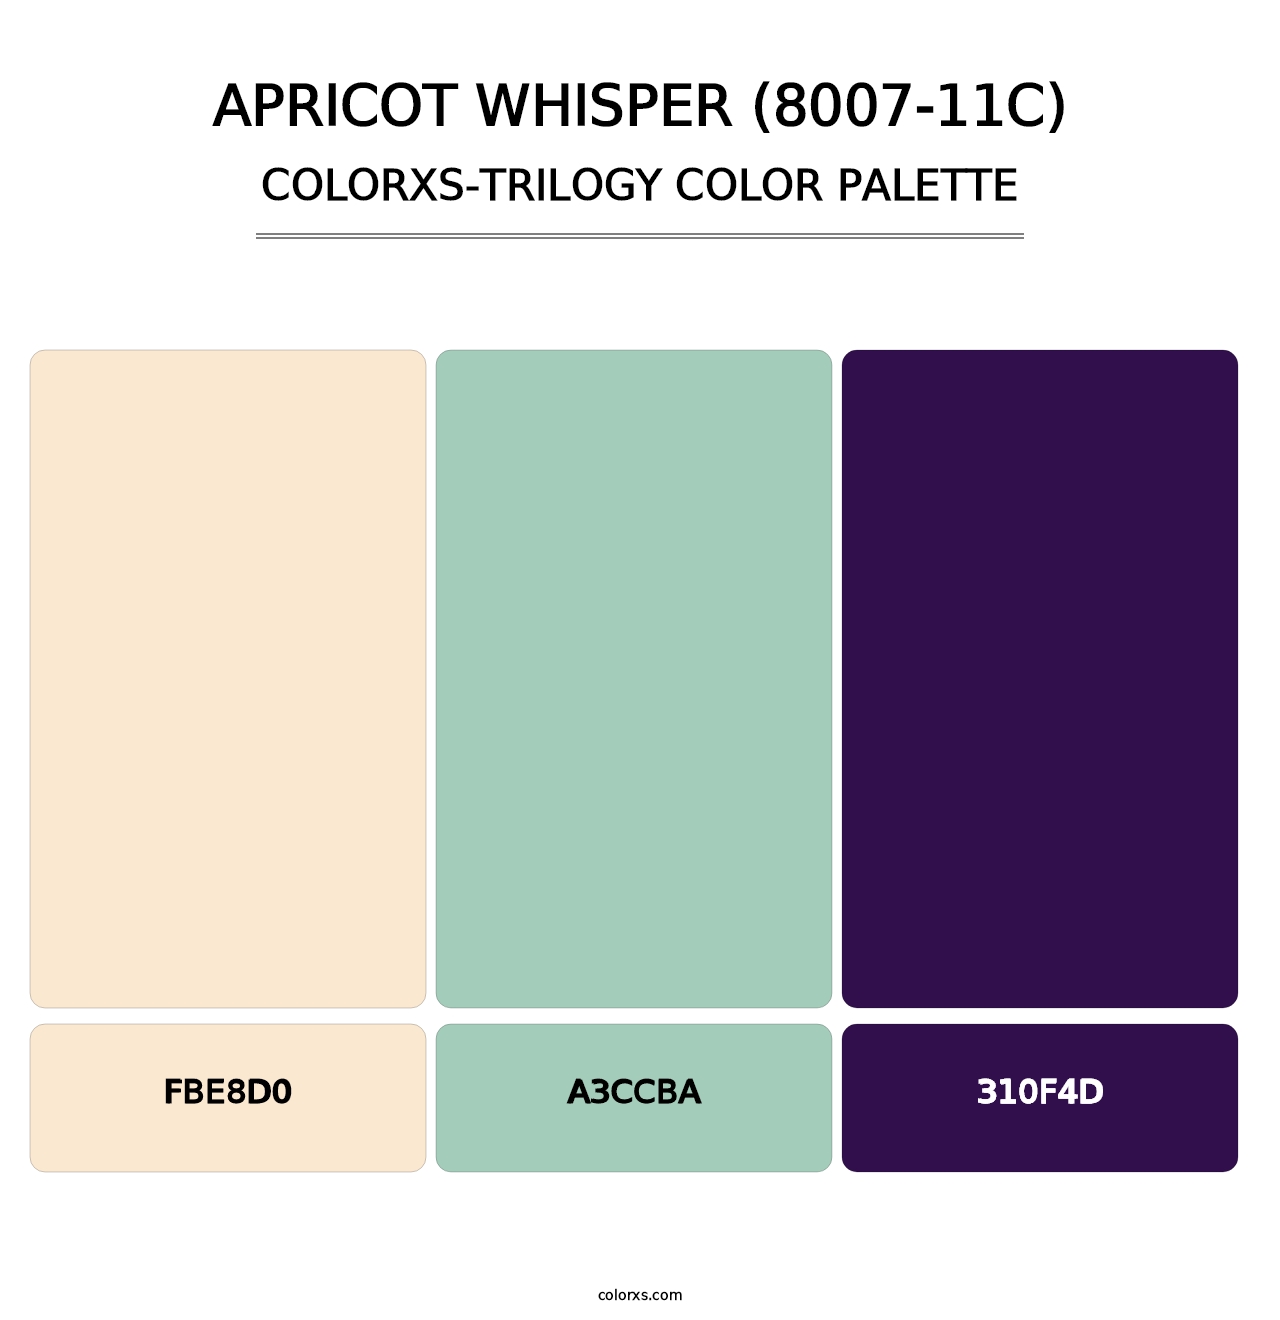 Apricot Whisper (8007-11C) - Colorxs Trilogy Palette